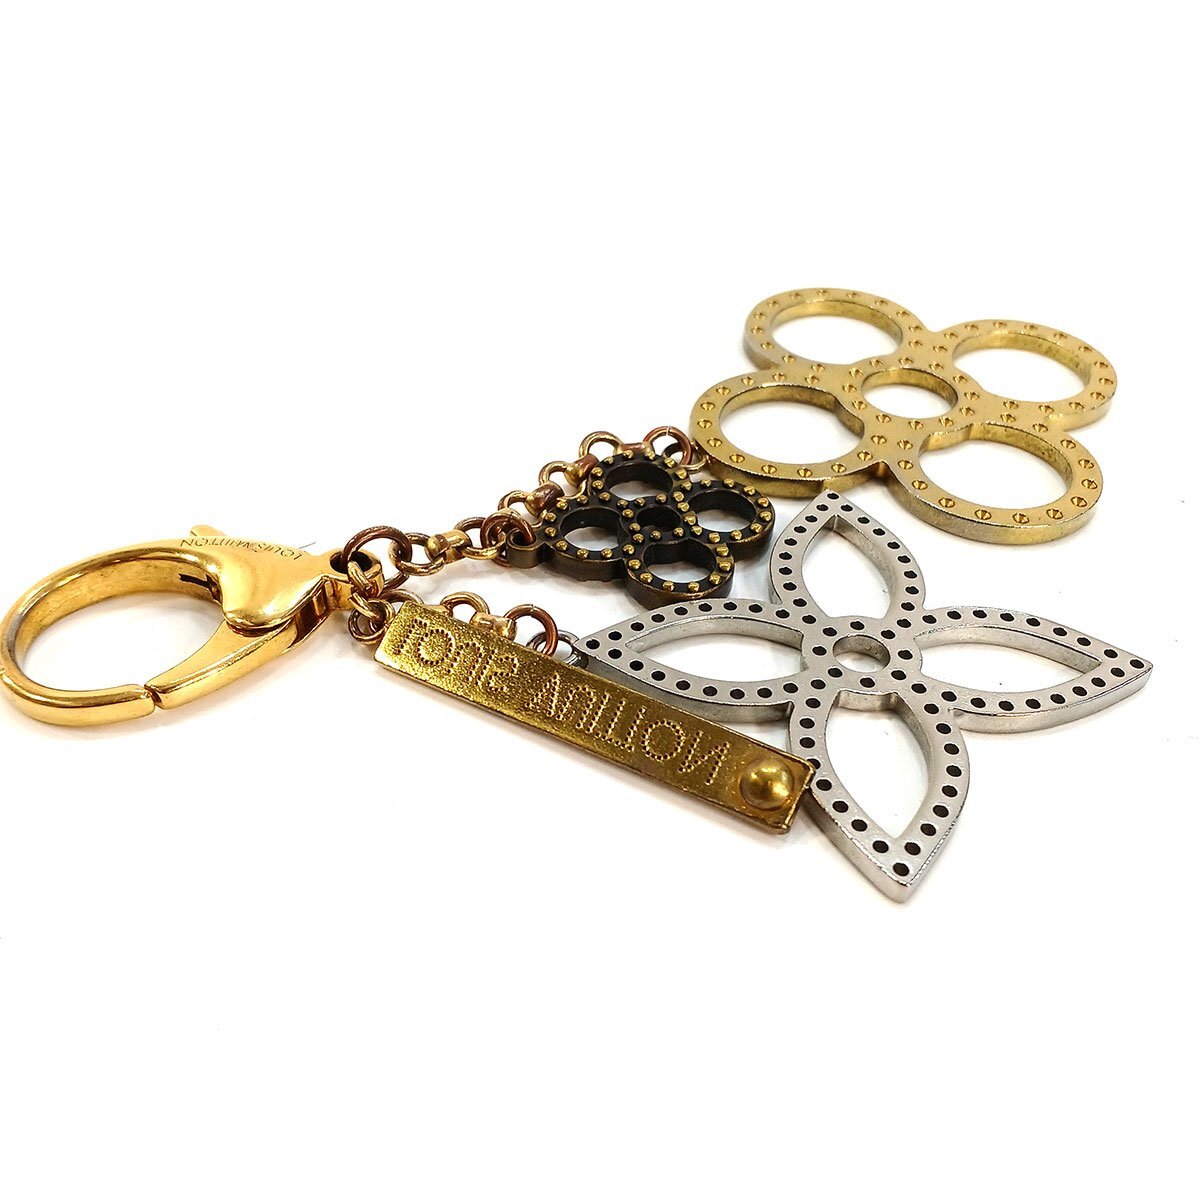  Louis Vuitton biju-sak*ta purge .M65090 bag charm key holder key ring LOUIS VUITTON used *